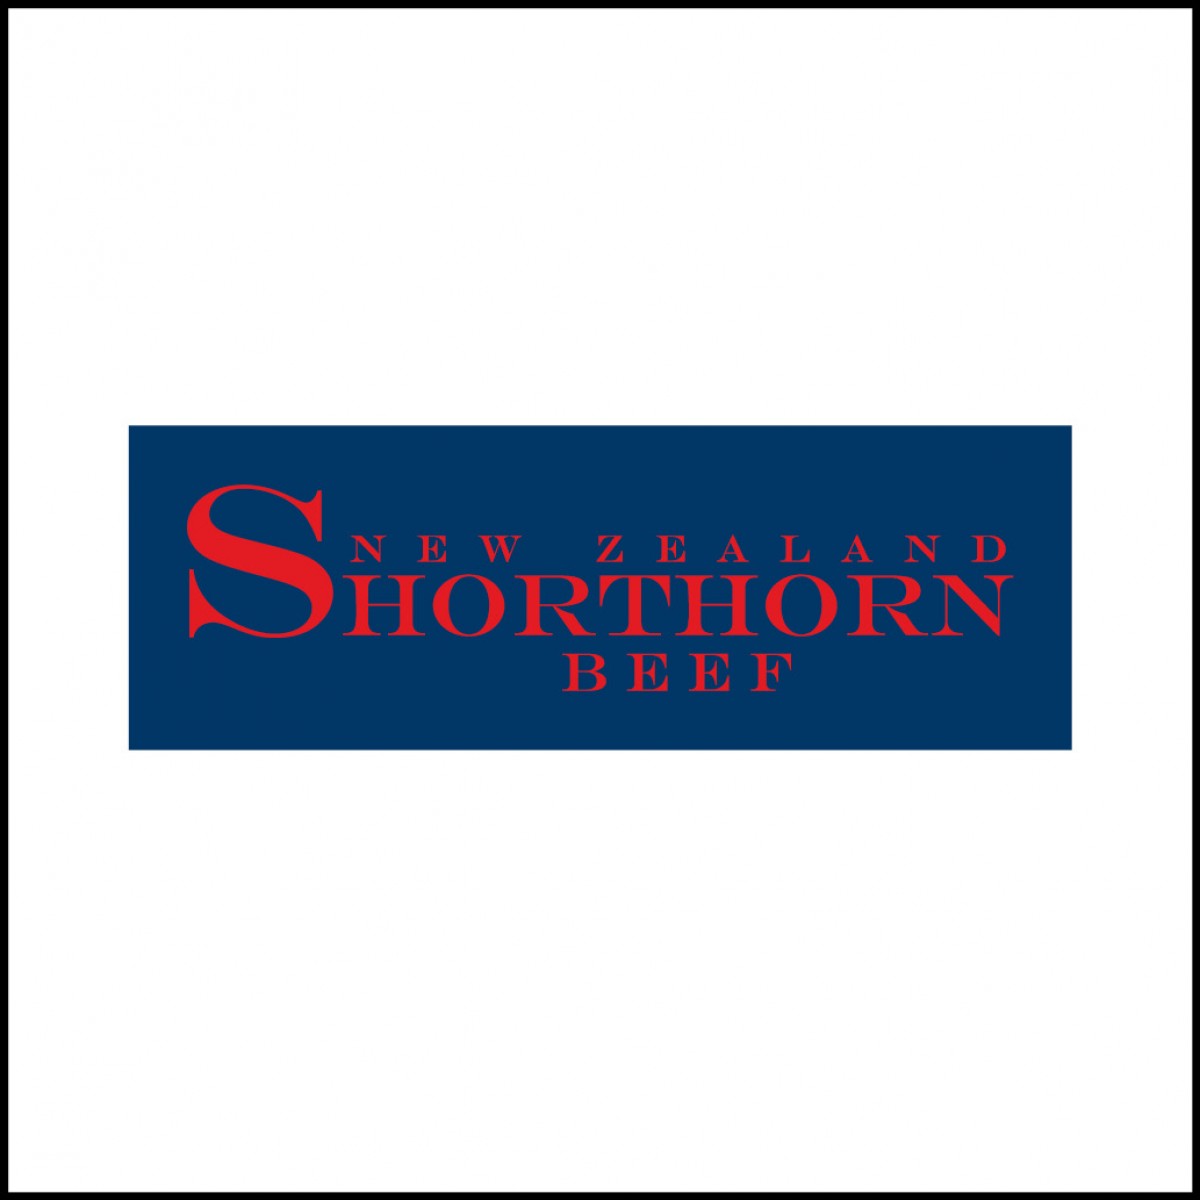 Shorthorn tile